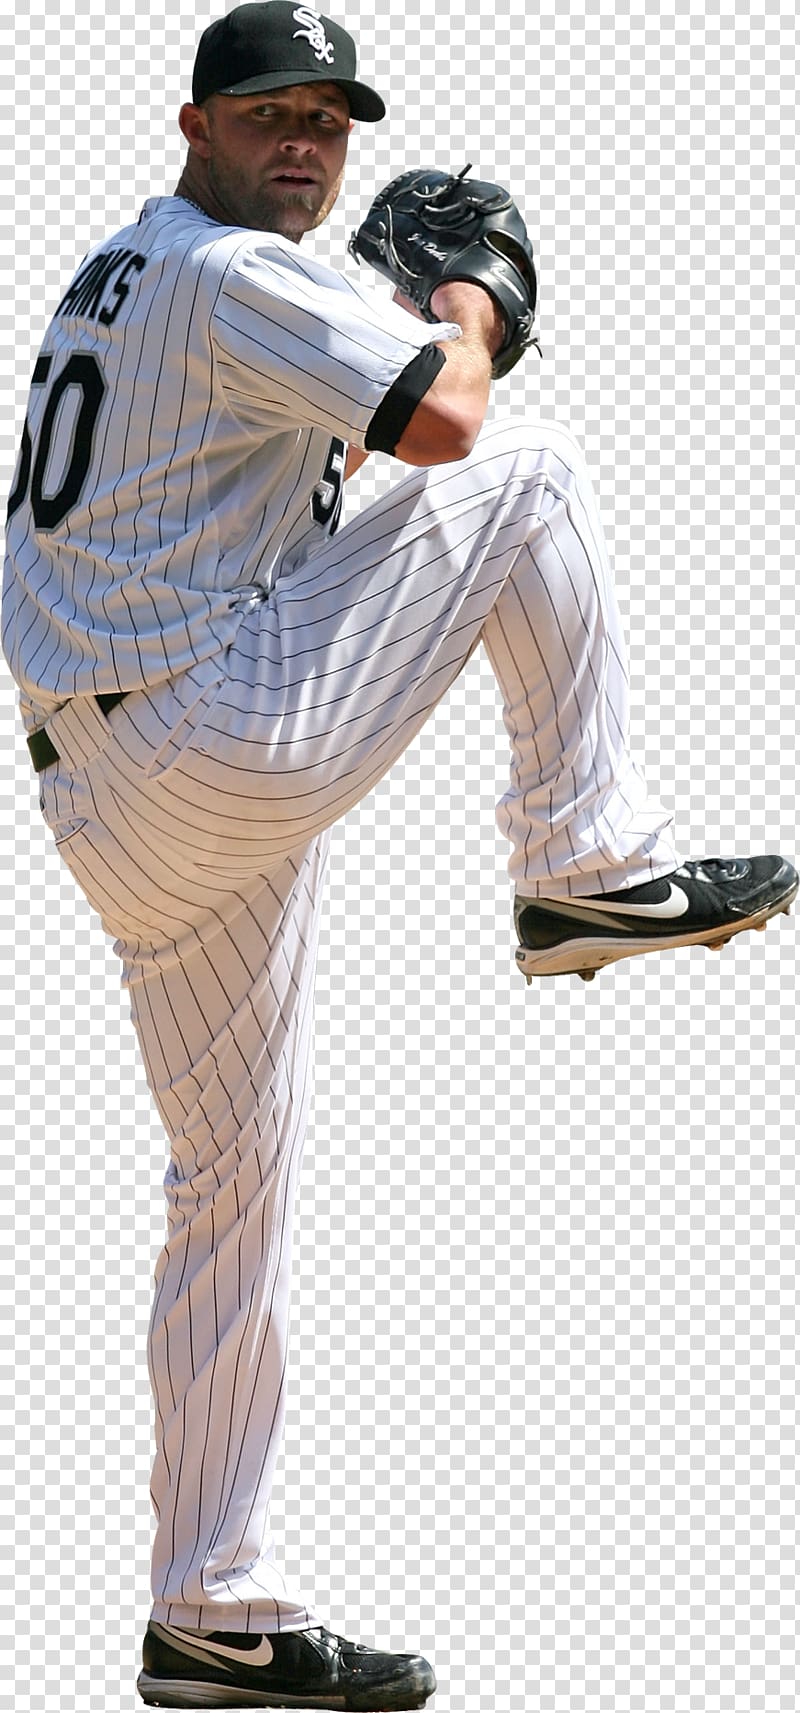 Pitcher Baseball positions Baseball Bats Outerwear, baseball transparent background PNG clipart